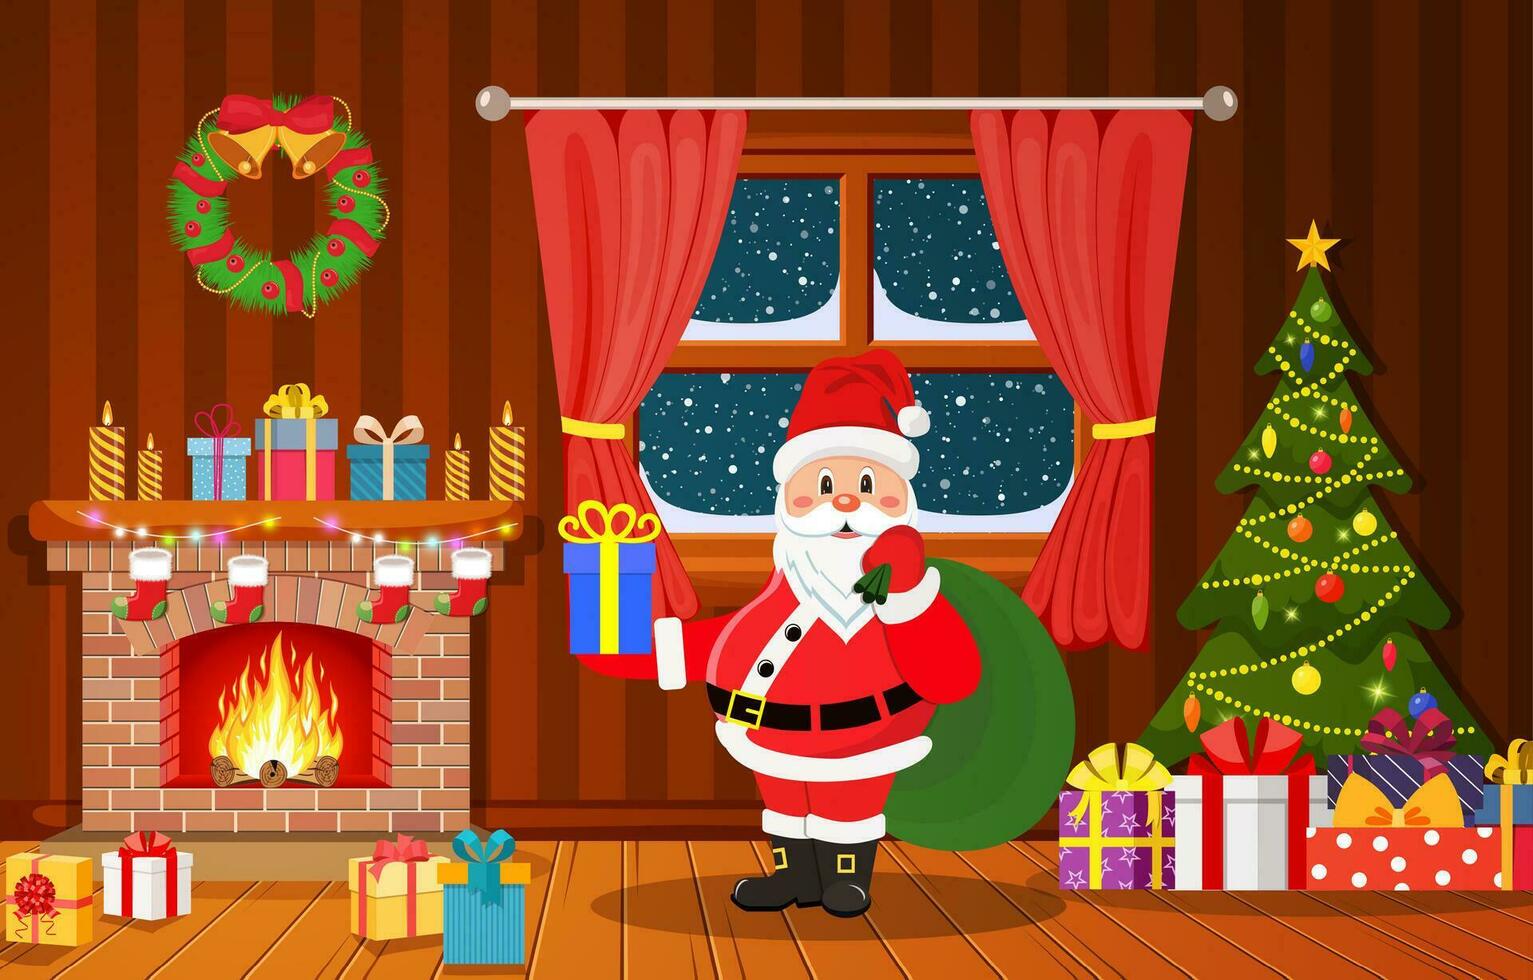 Santa Claus in Christmas room interior vector